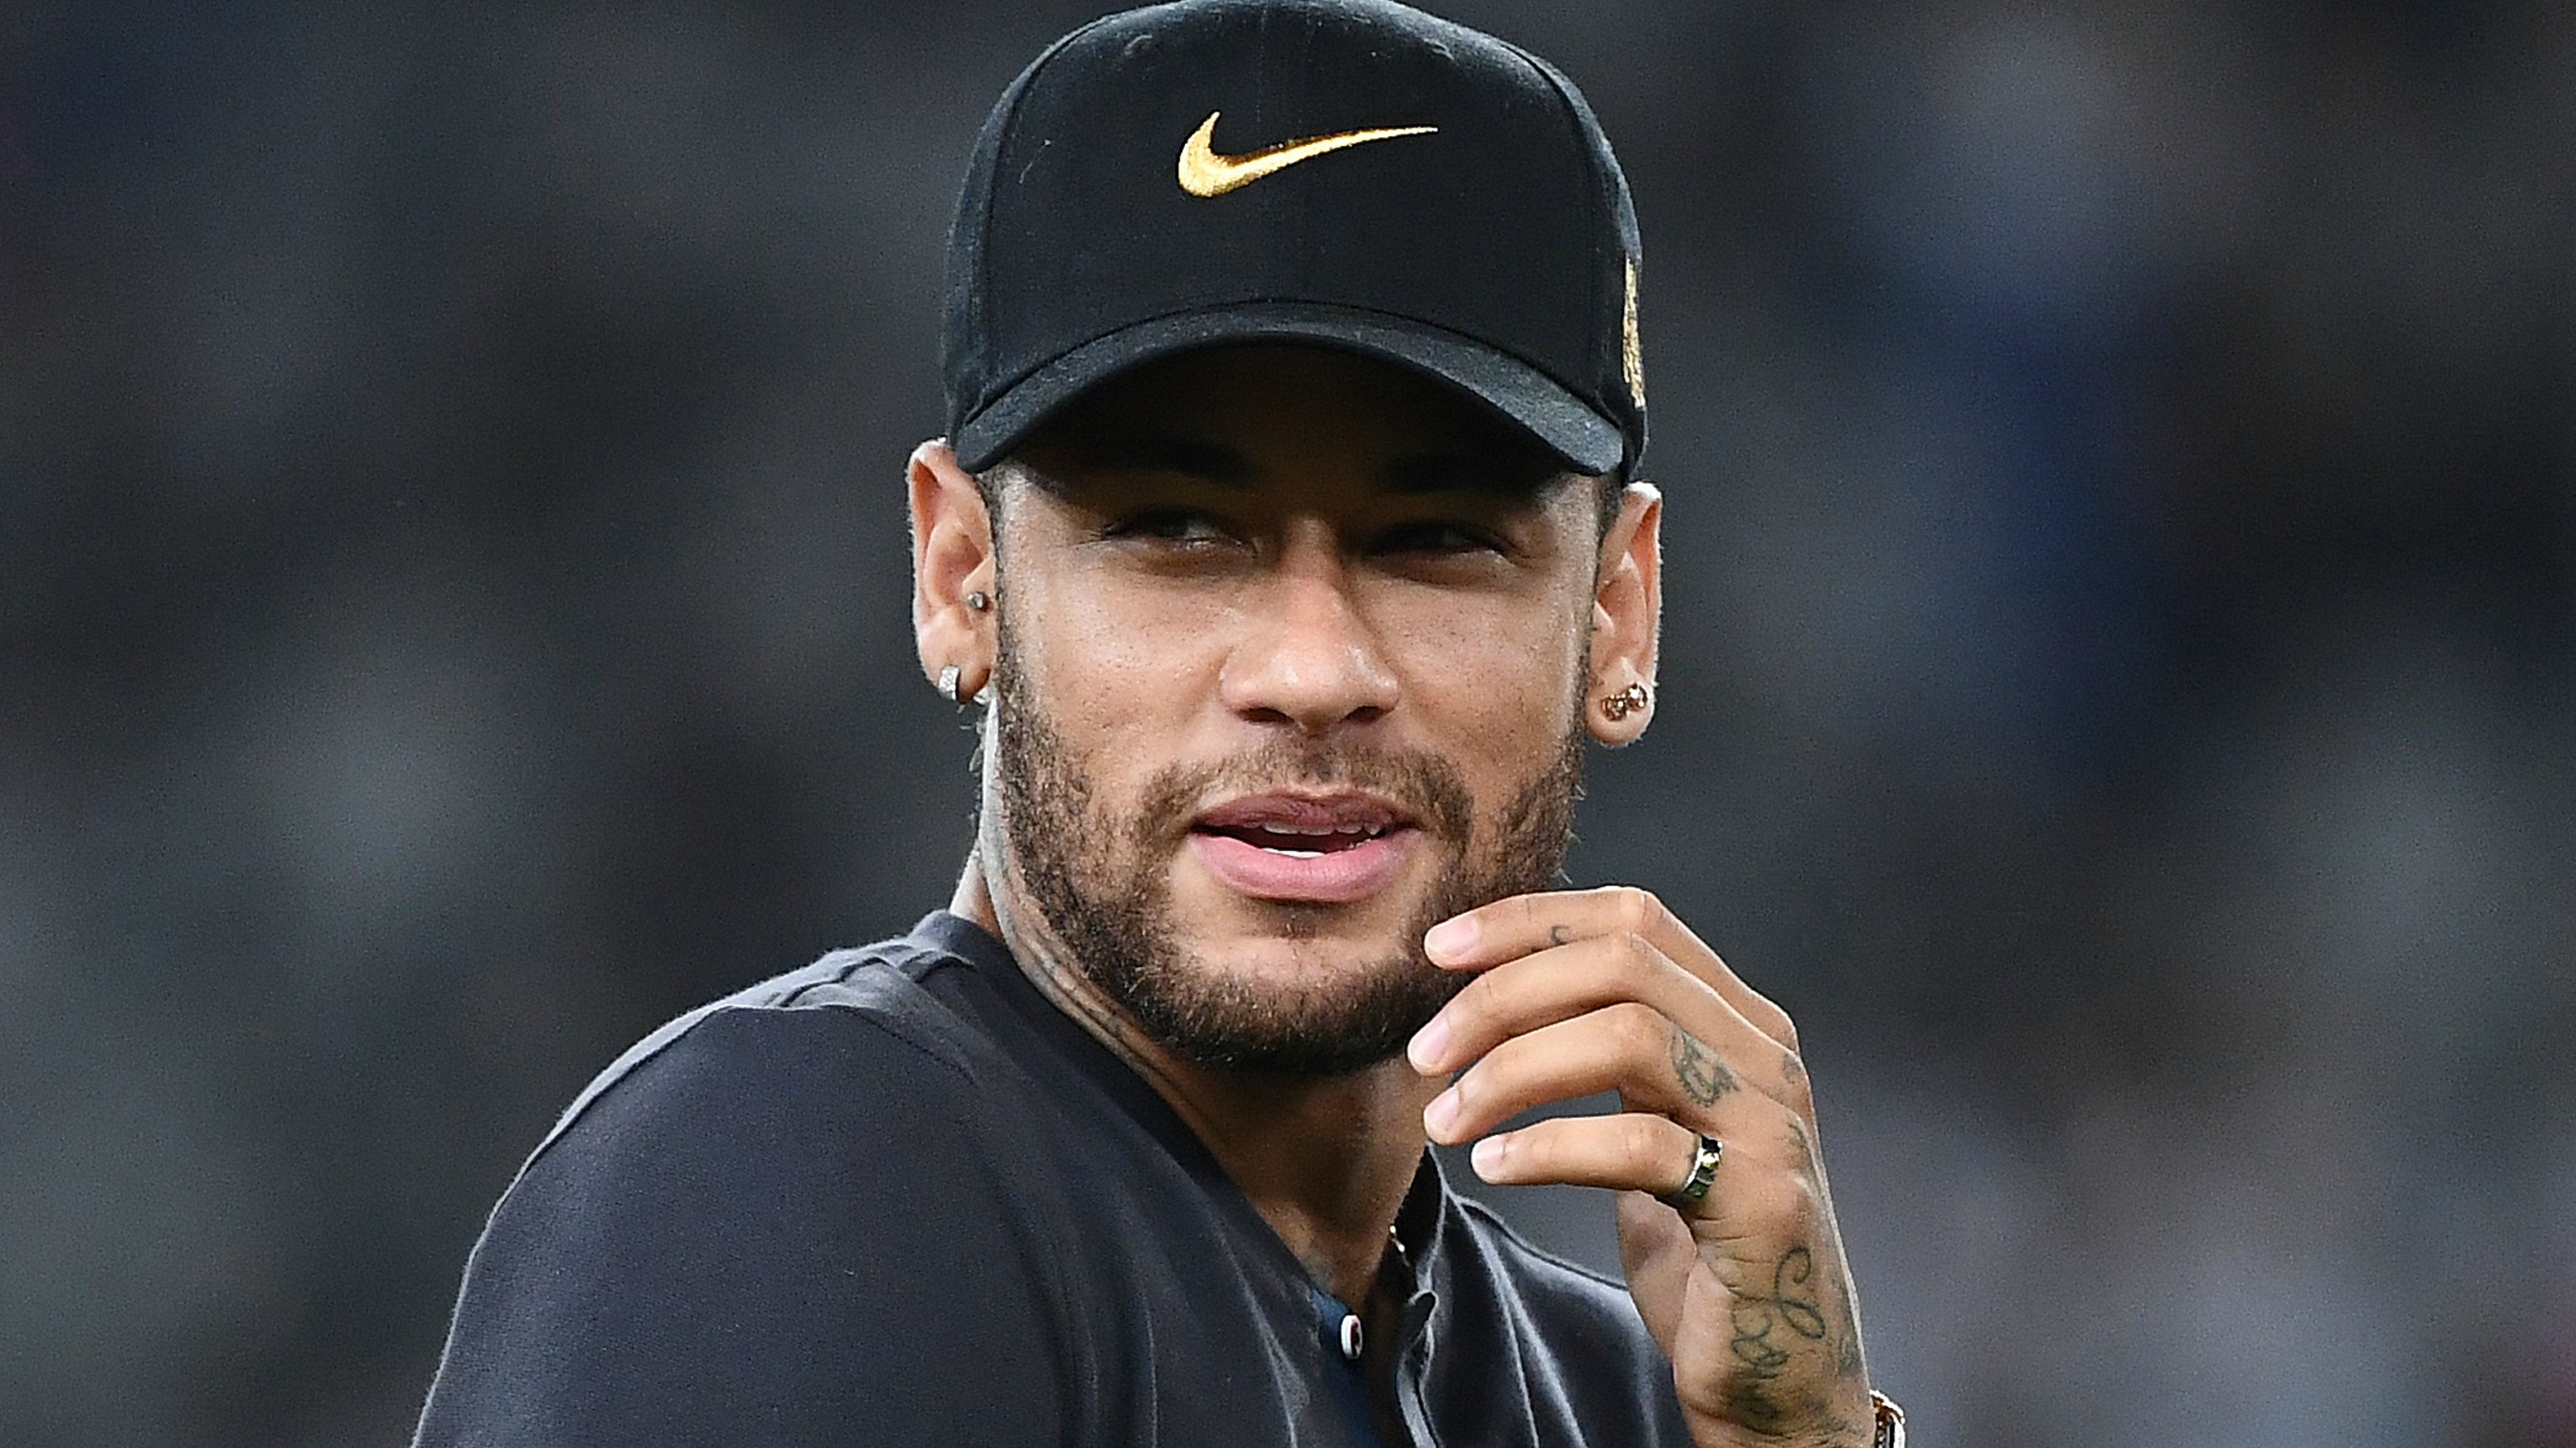 Juiz determina que Neymar pague R$ 88 milhões em dívidas - ISTOÉ Independente